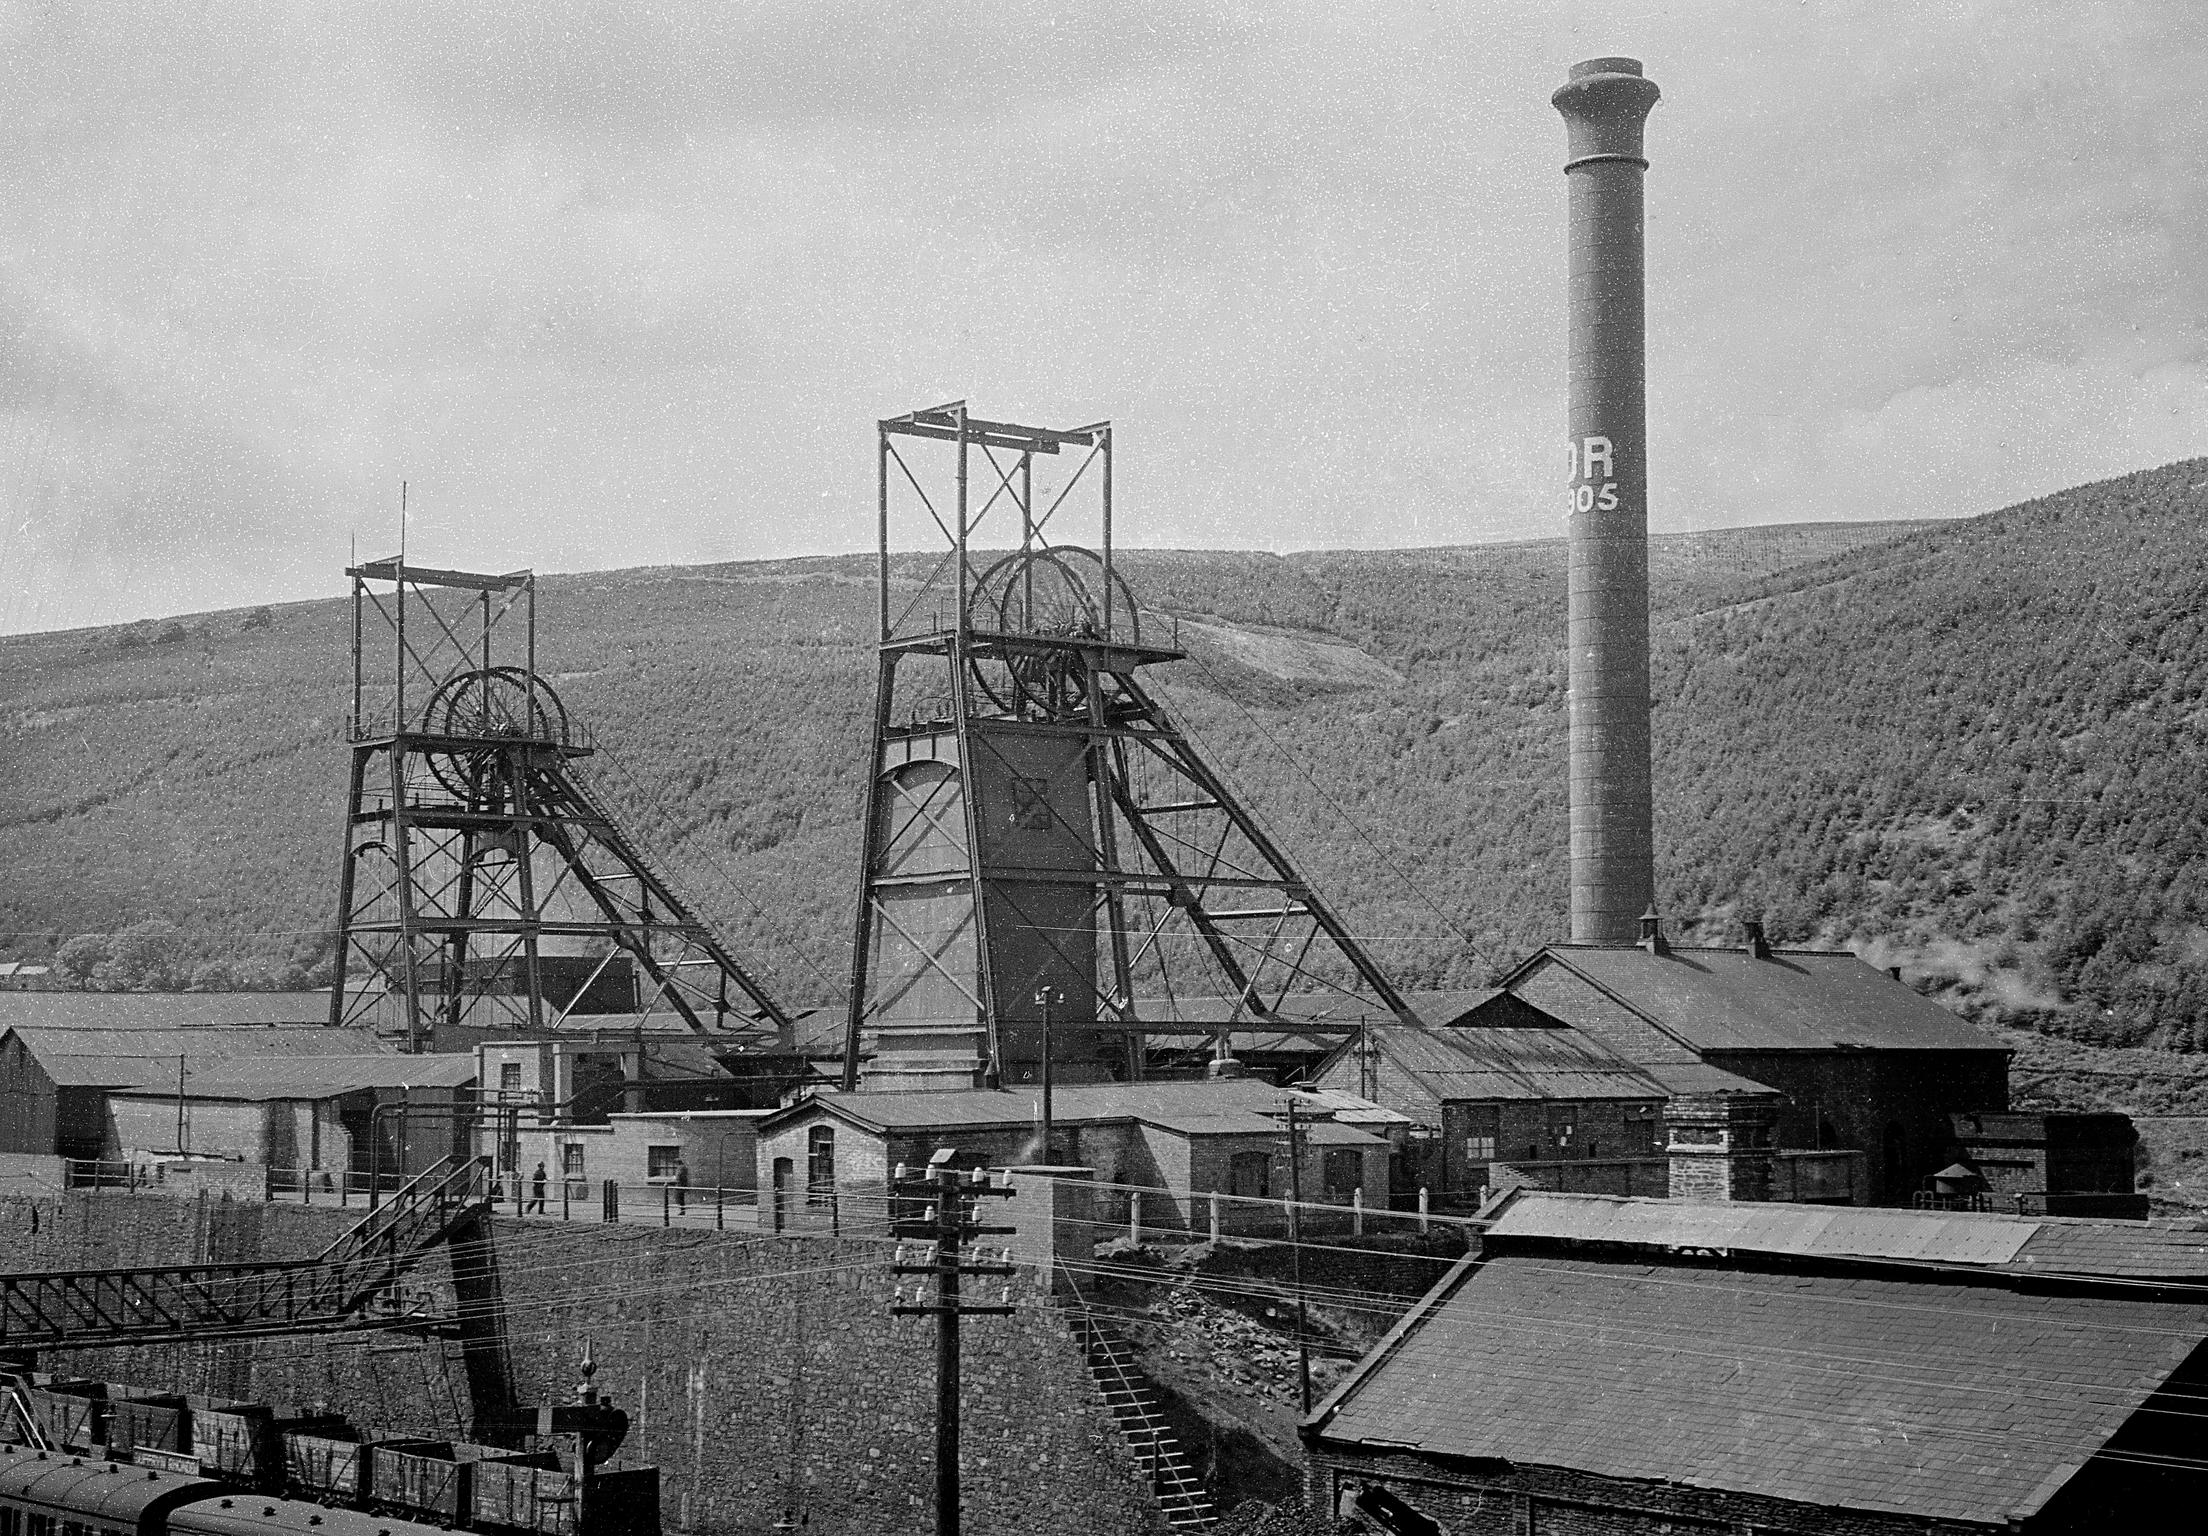 Duffryn Rhondda Colliery, negative